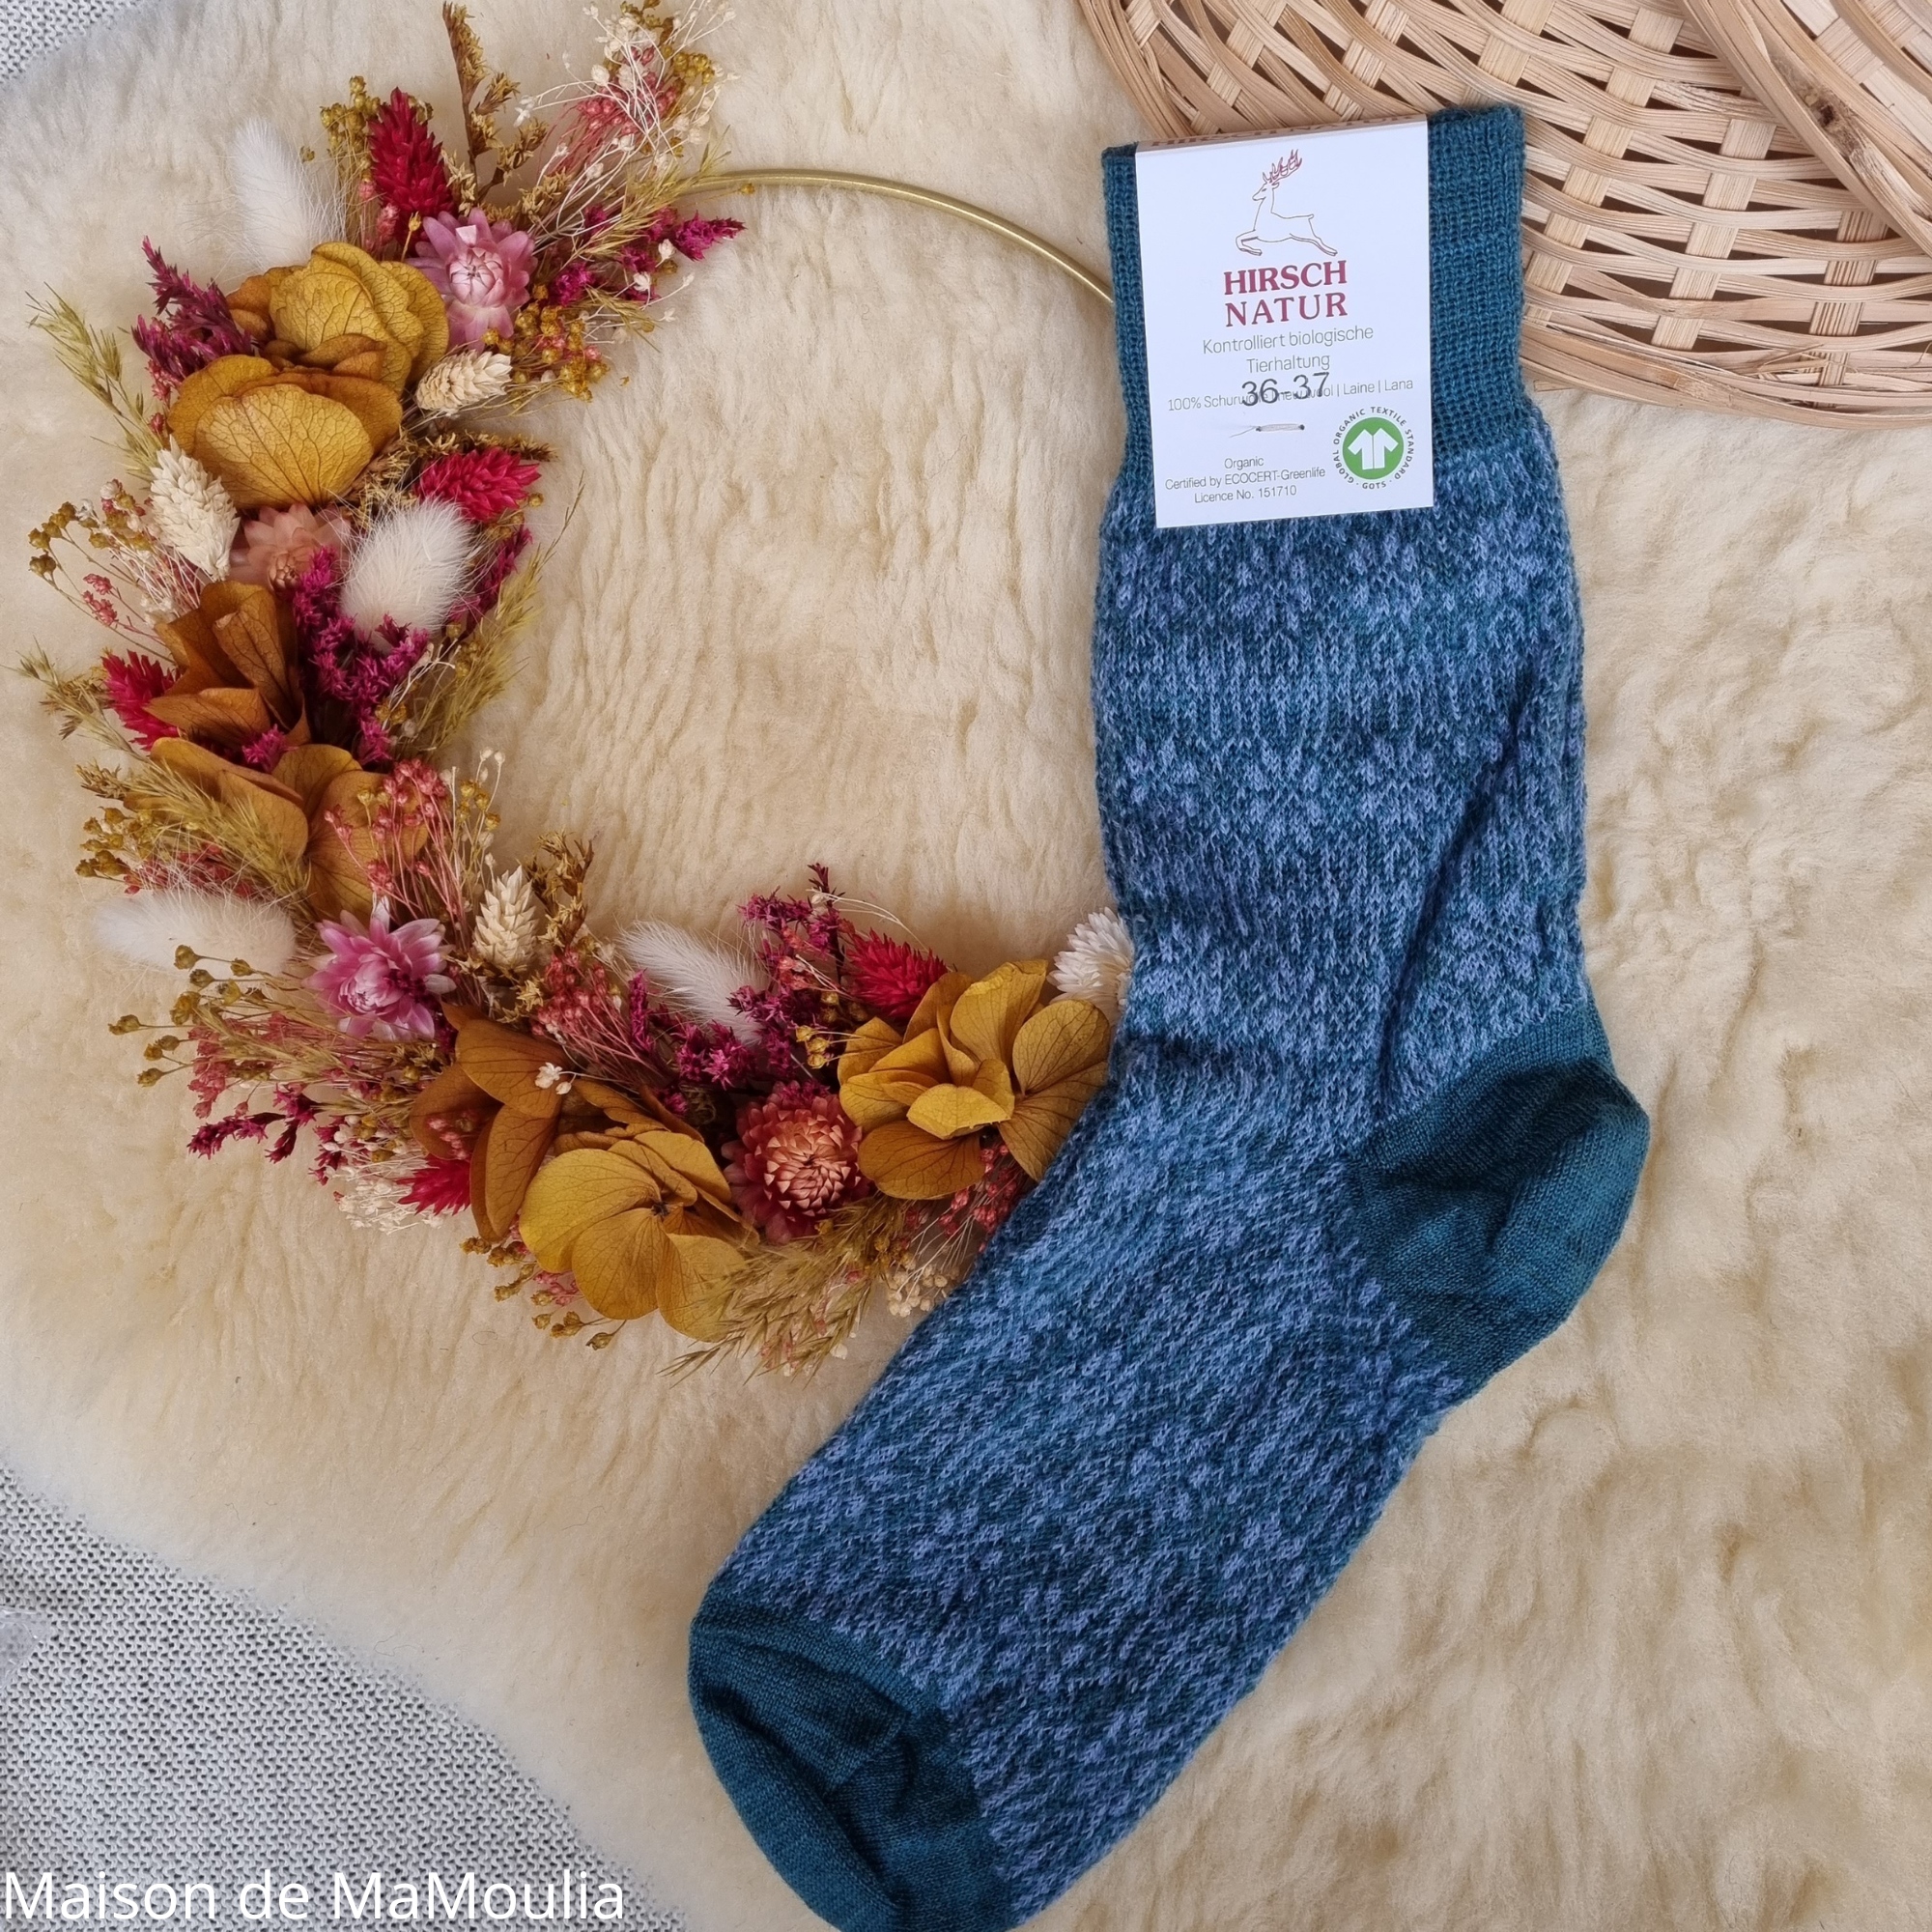 156-chaussettes-pure-laine-bio-ecologique-hirsch-natur-maison-de-mamoulia-norvegienne-fine-adulte- turquoise